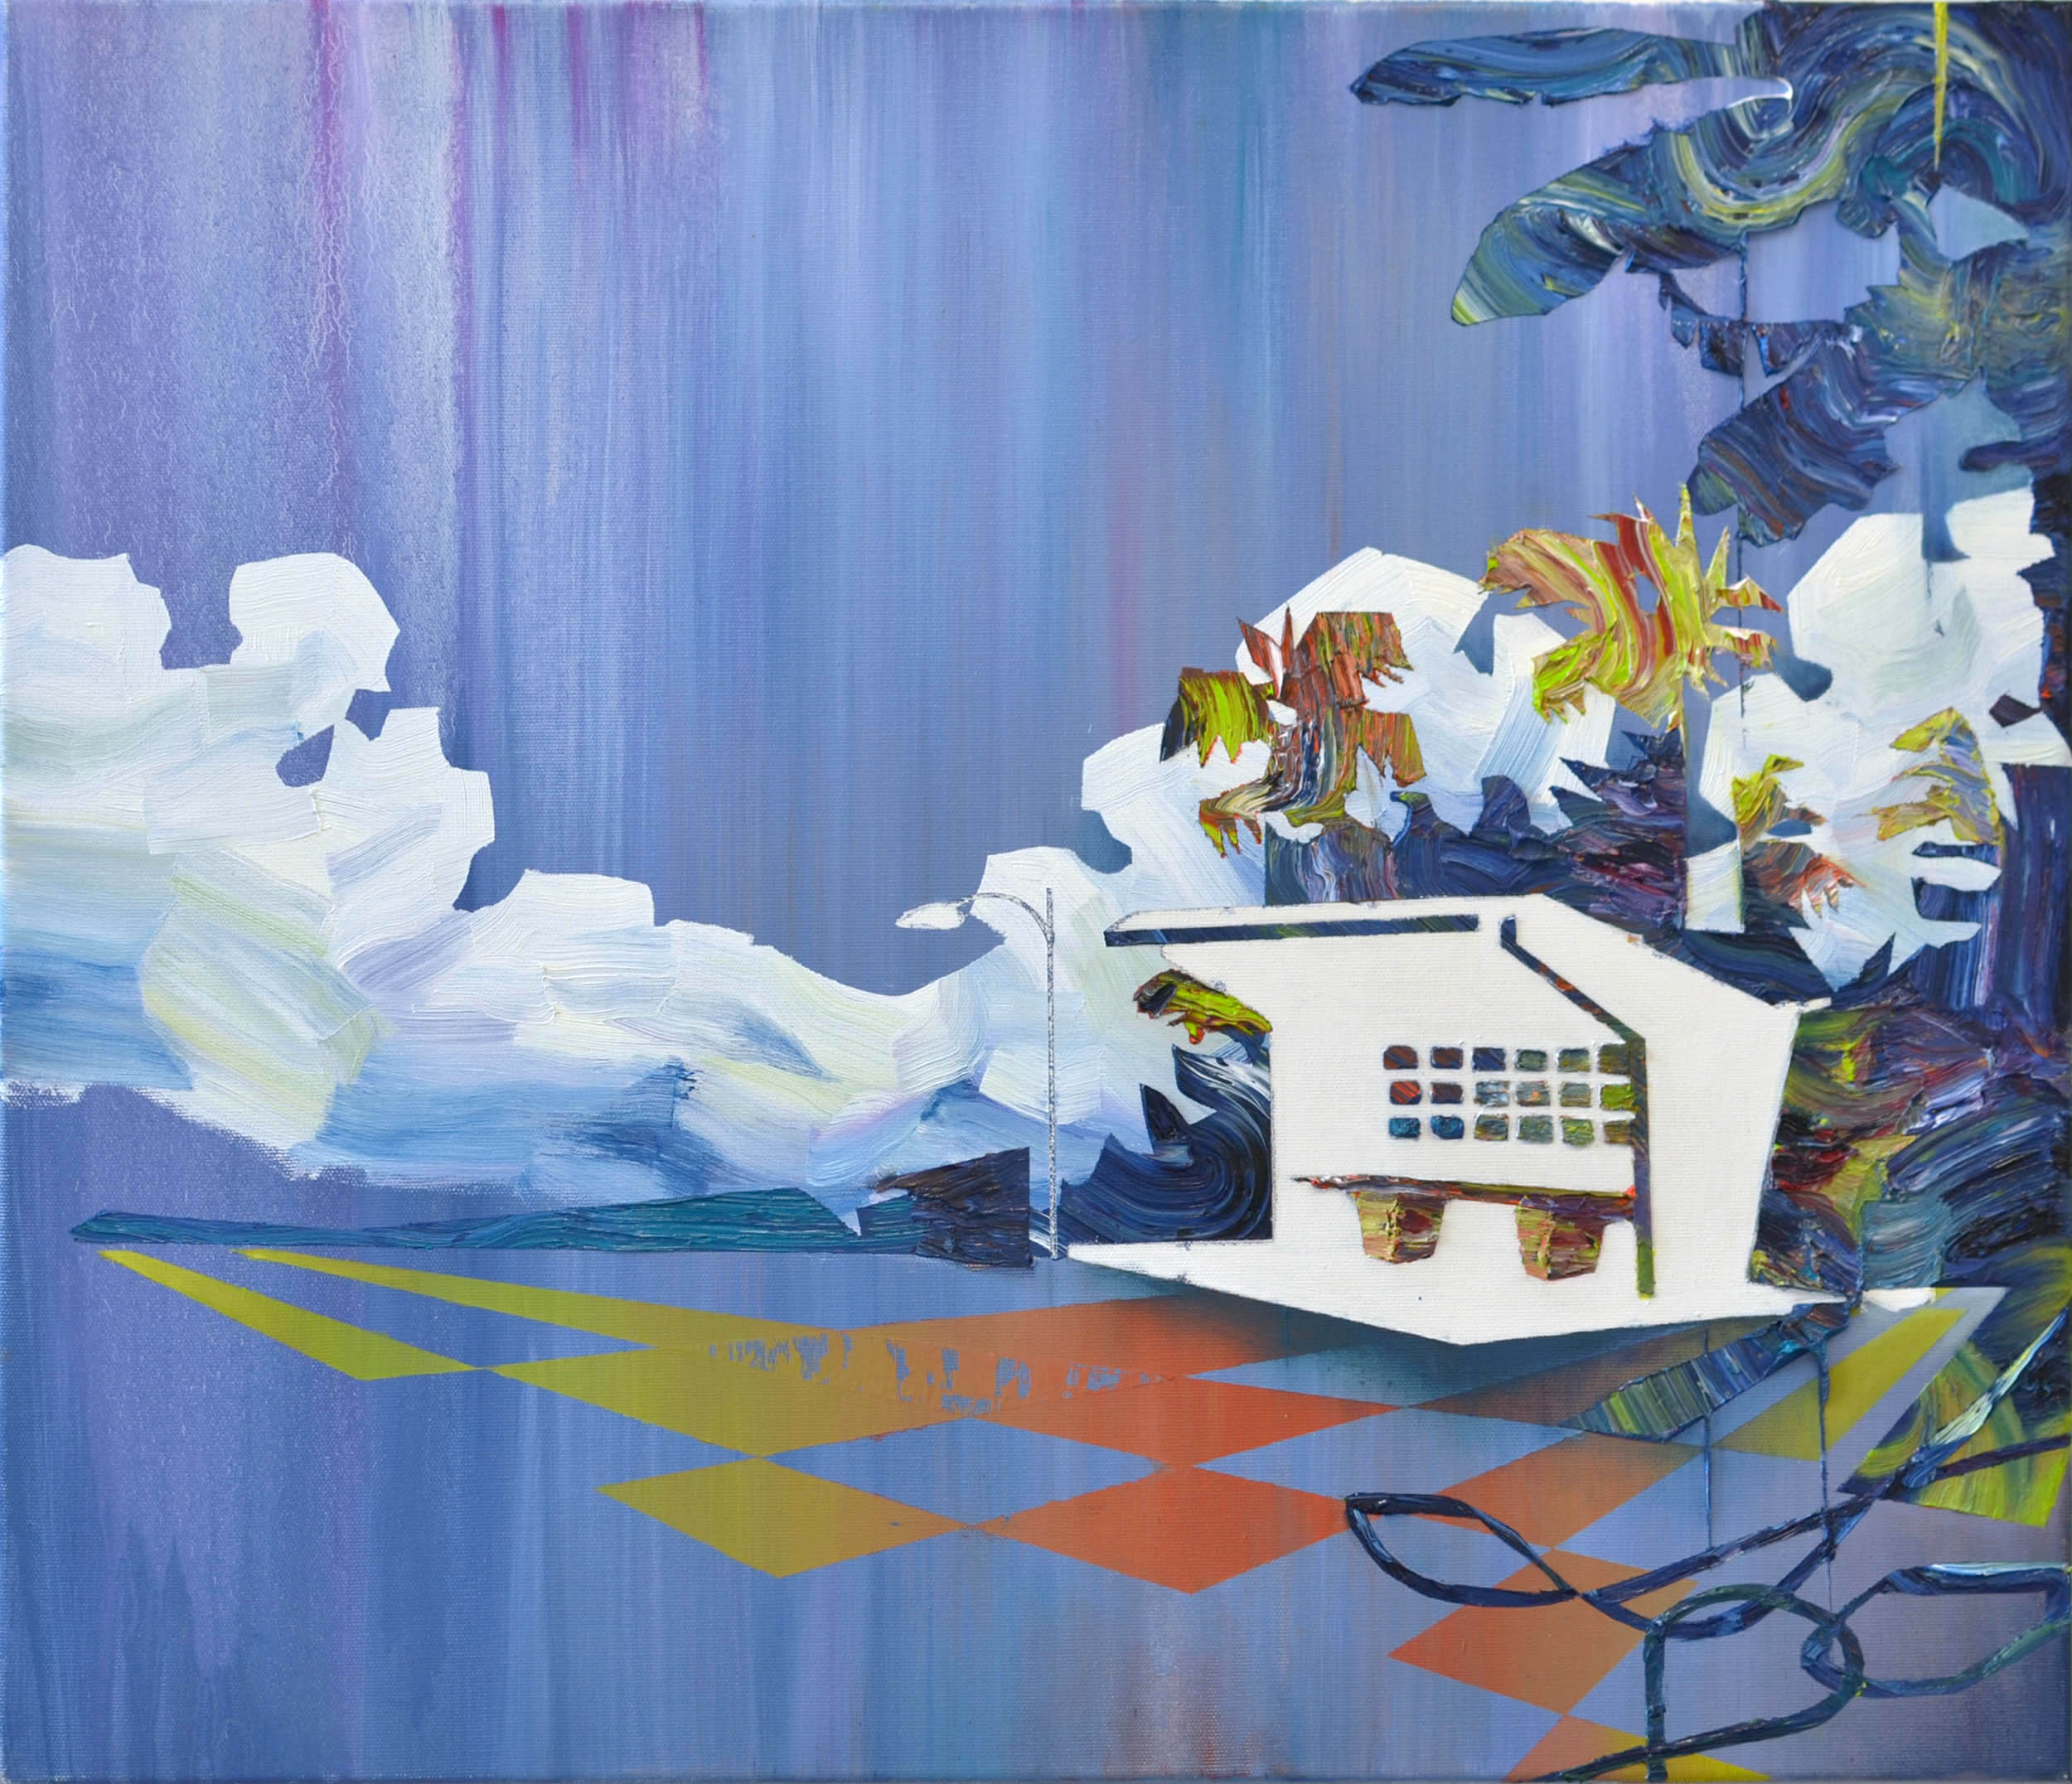   Sammeltaxi  oil on canvas 60 x 70 cm, 2010 